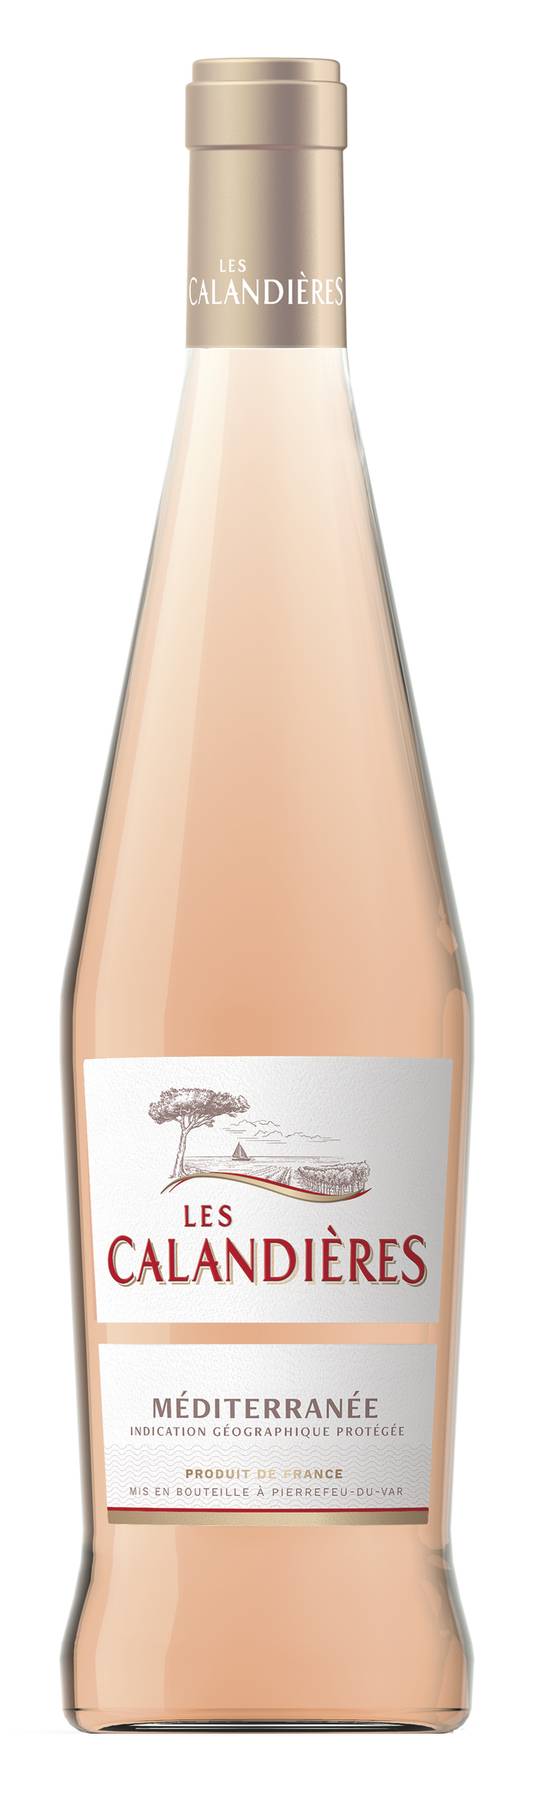 Les Calandières - Vin méditerranée IGP rosé (750 ml)